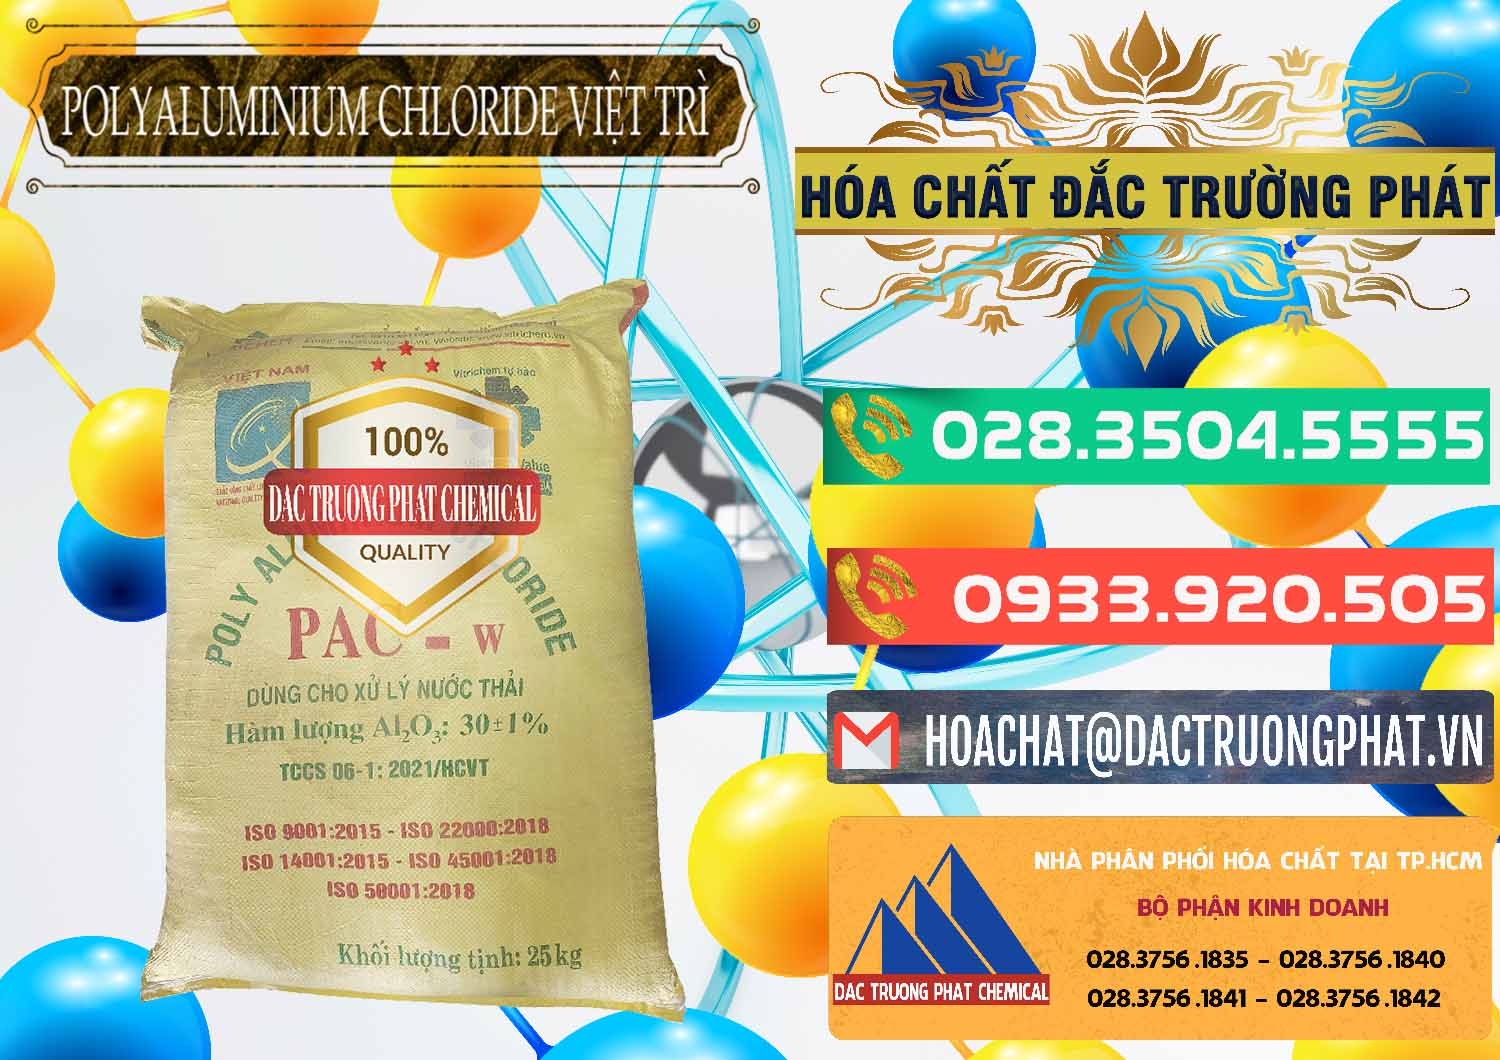 Kinh doanh & bán PAC - Polyaluminium Chloride Việt Trì Việt Nam - 0487 - Nhà phân phối ( bán ) hóa chất tại TP.HCM - congtyhoachat.com.vn